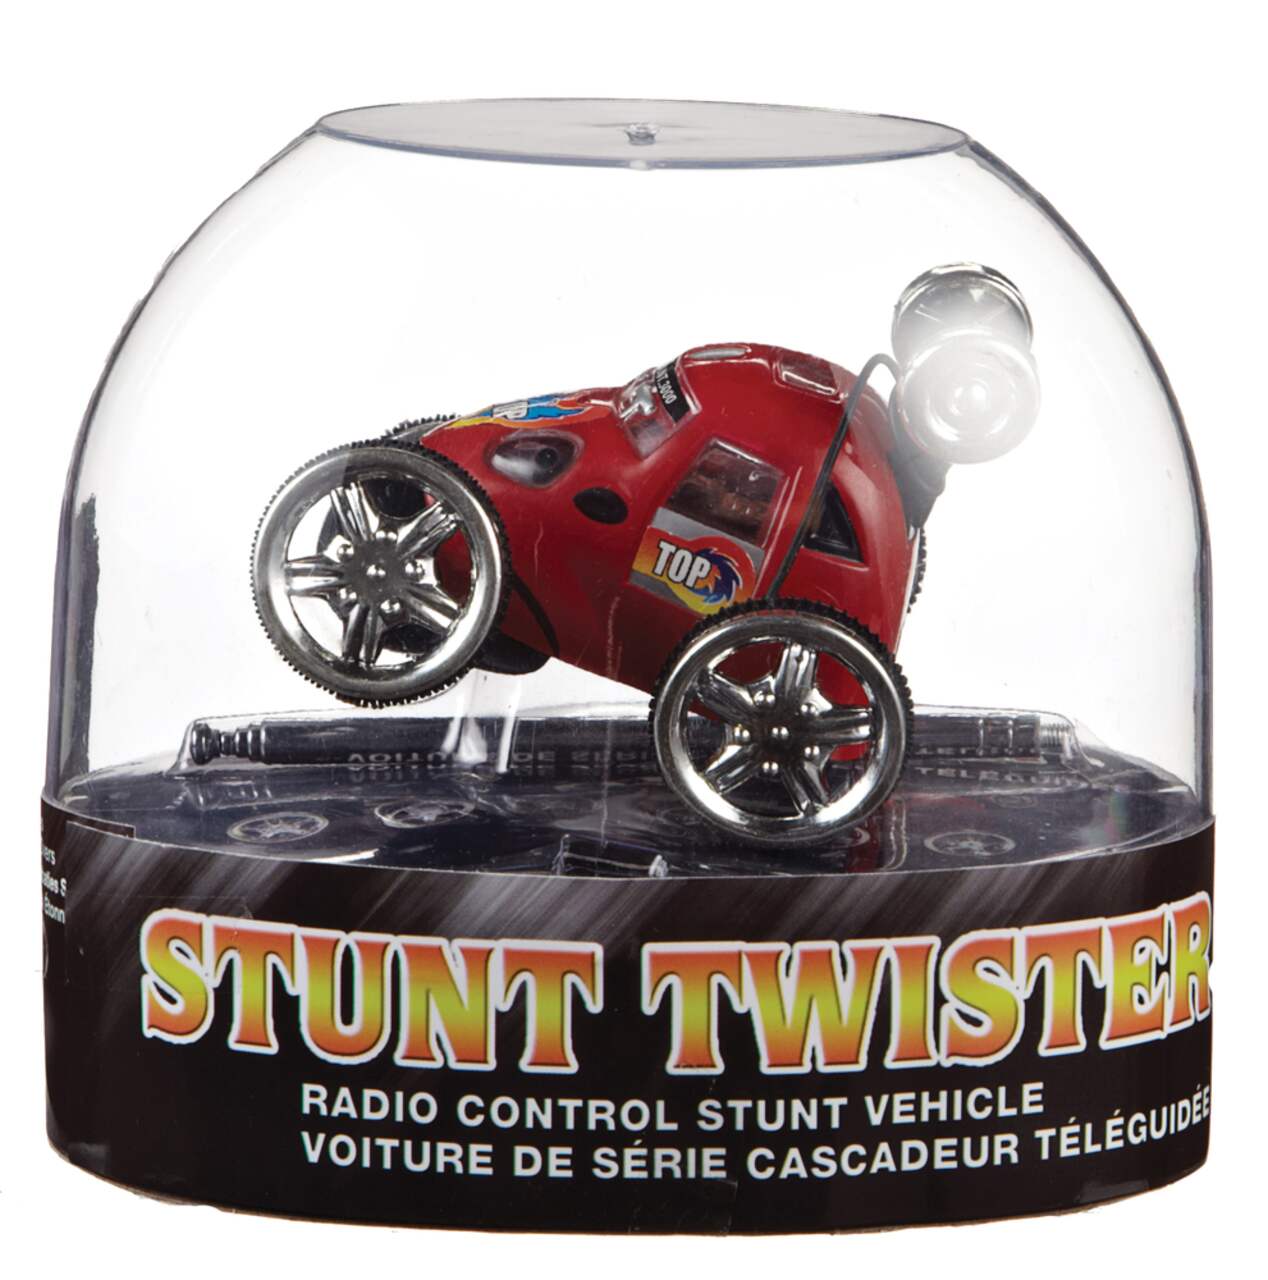 Voiture télécommandée Stunt Twister avec lumières et interrupteur